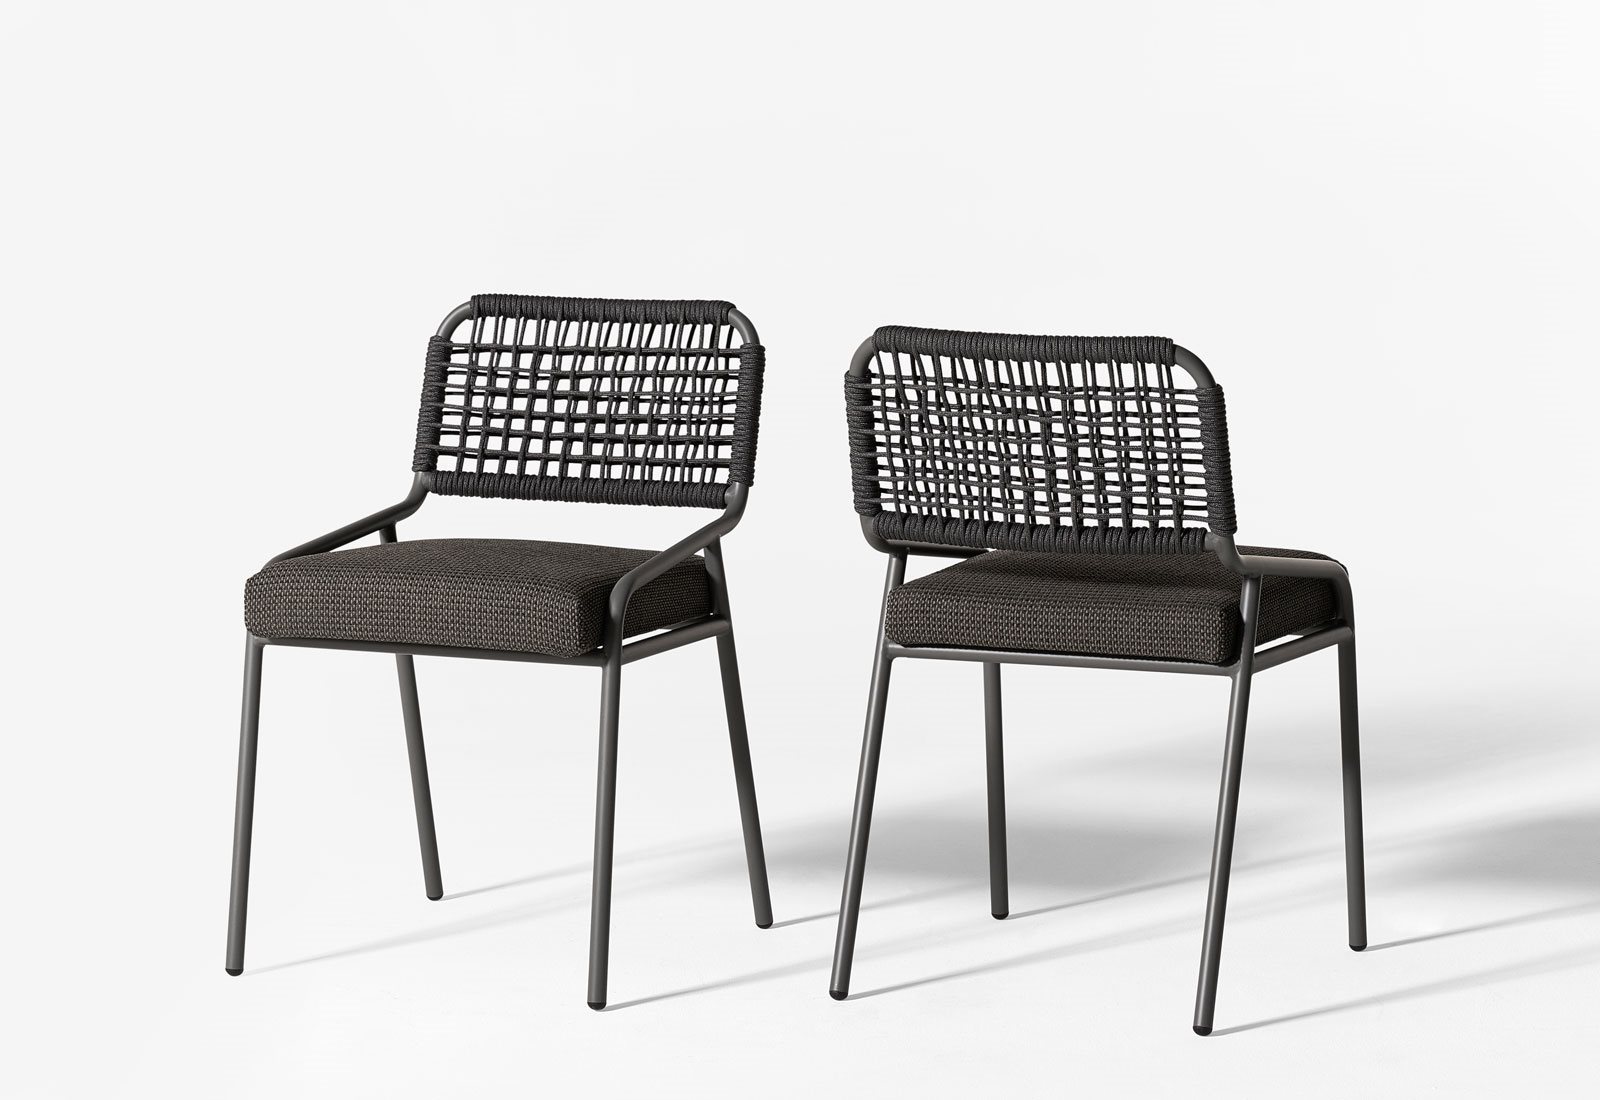 Tai-open-air-chair-01-1600x1100